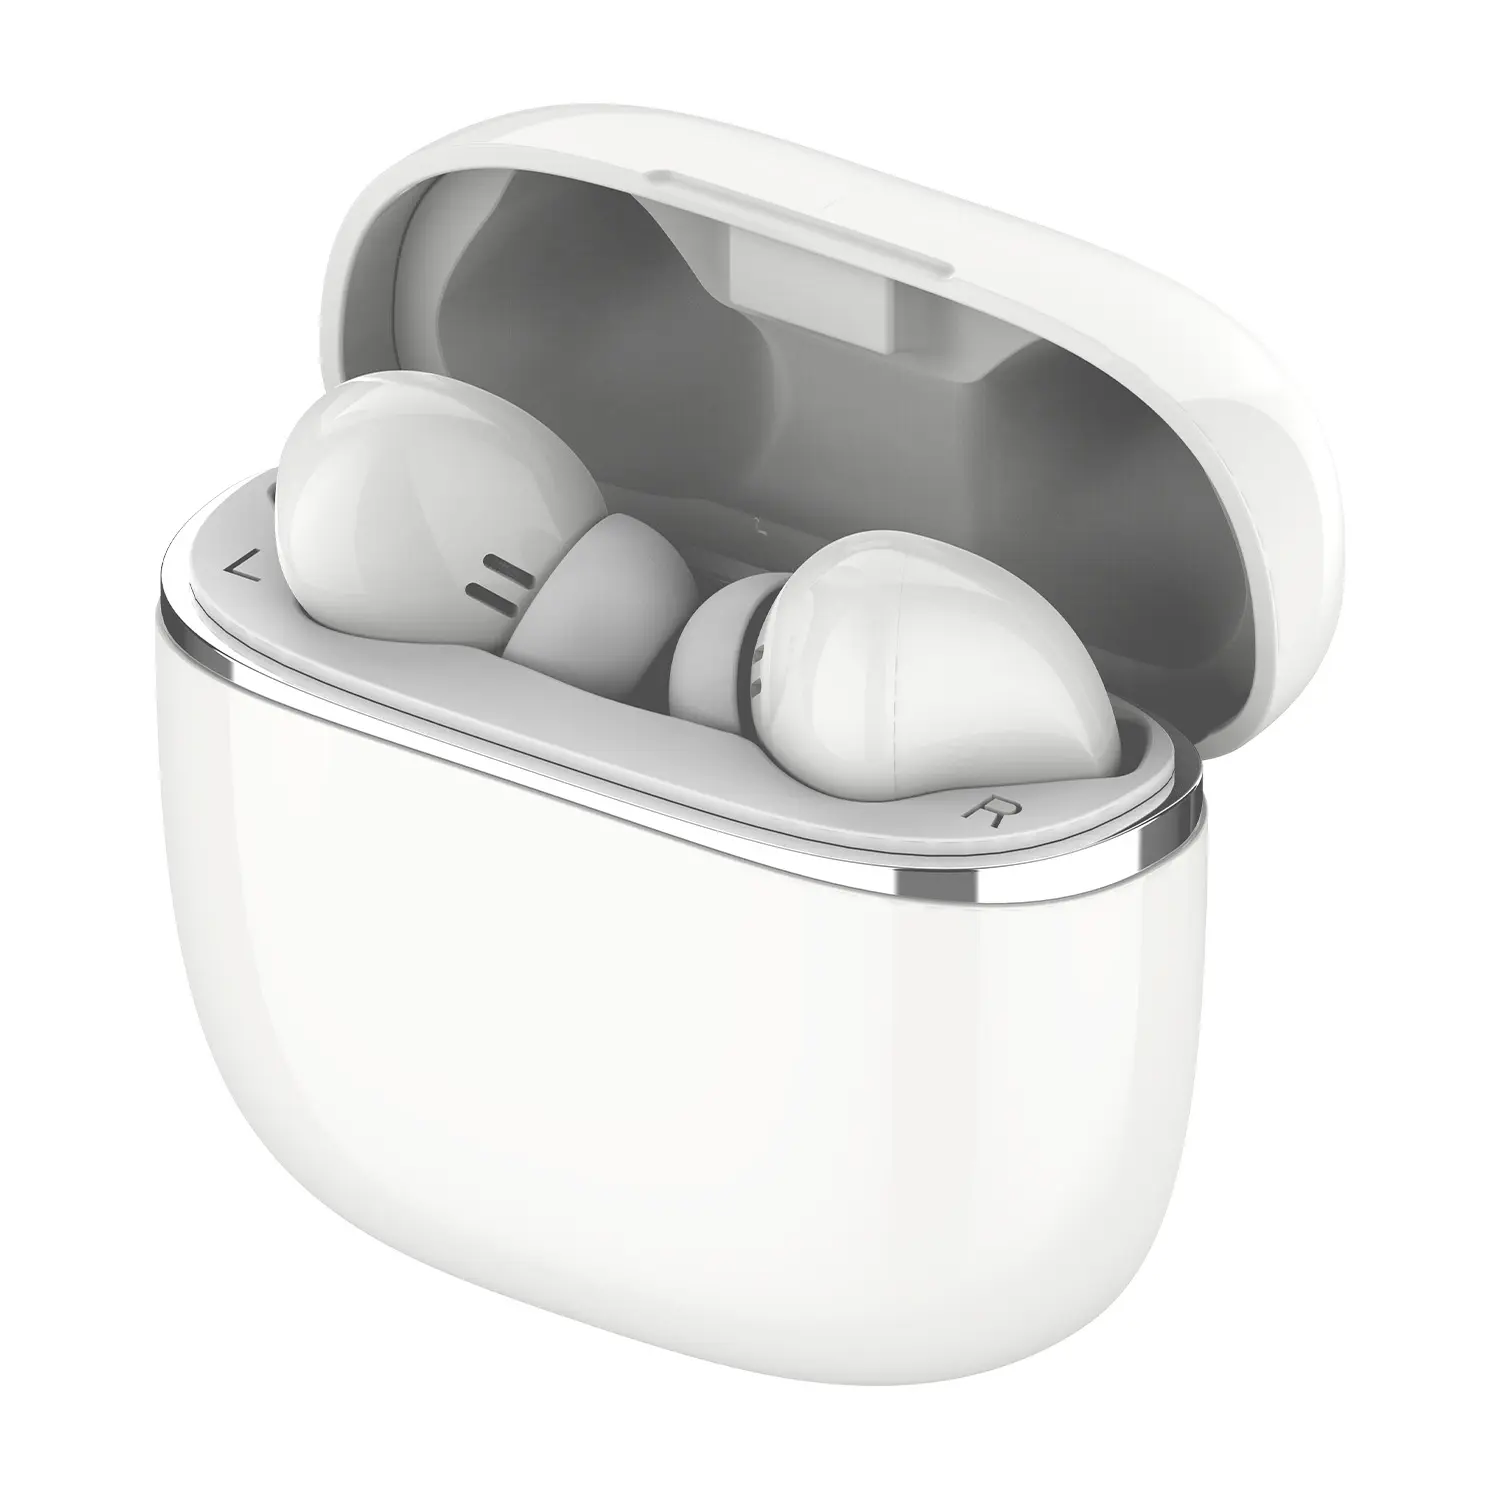 Amazon ขายร้อนจำนวนมากซื้อปลั๊กอุดหูไร้สายโลหะผสมโลหะหูฟังไร้สายบลูทูธมินิ Android Ear Pods